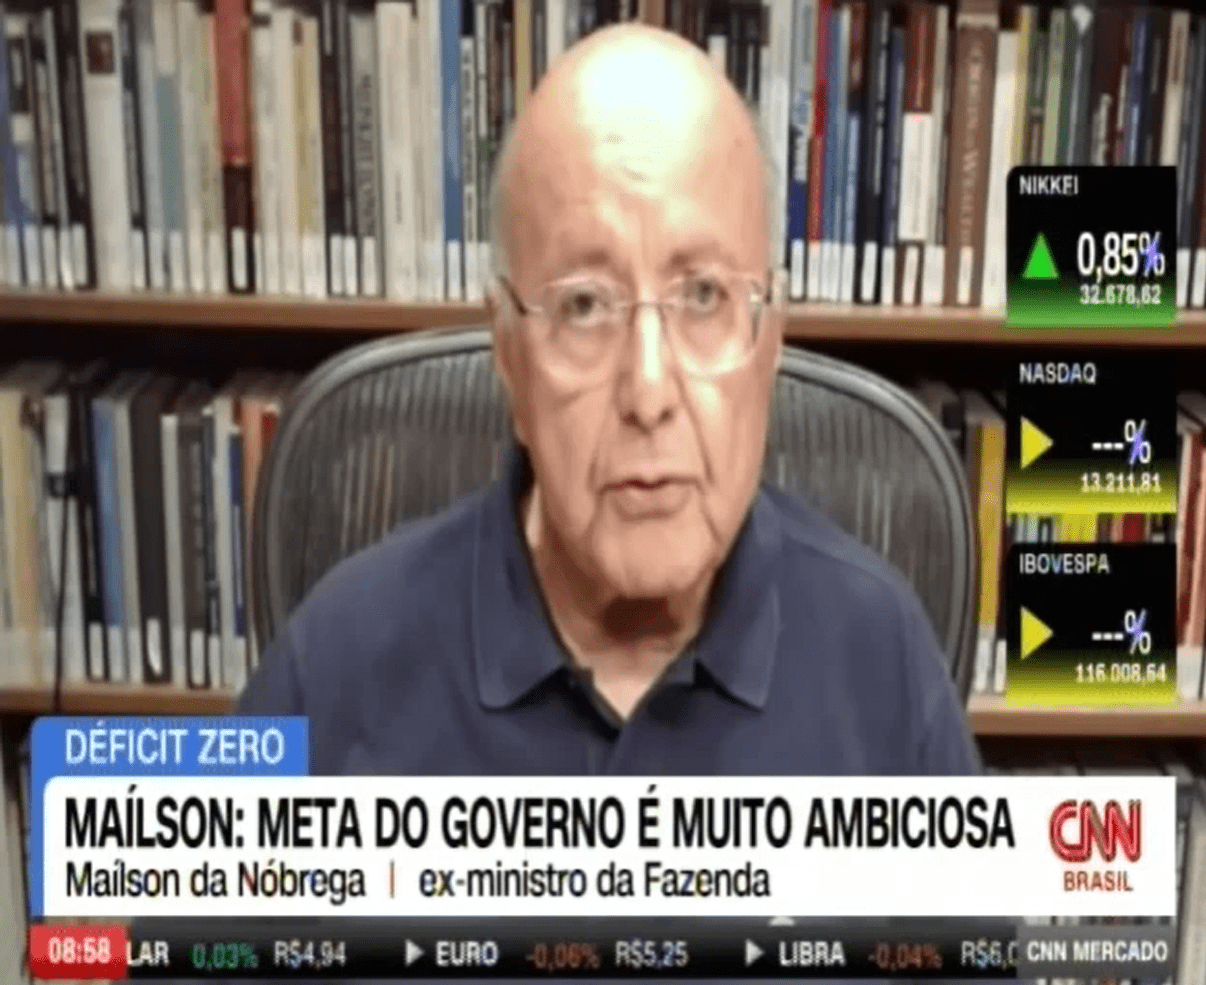 Déficit zero: Maílson da Nóbrega prevê dificuldades em aumentar arrecadação - CNN Brasil